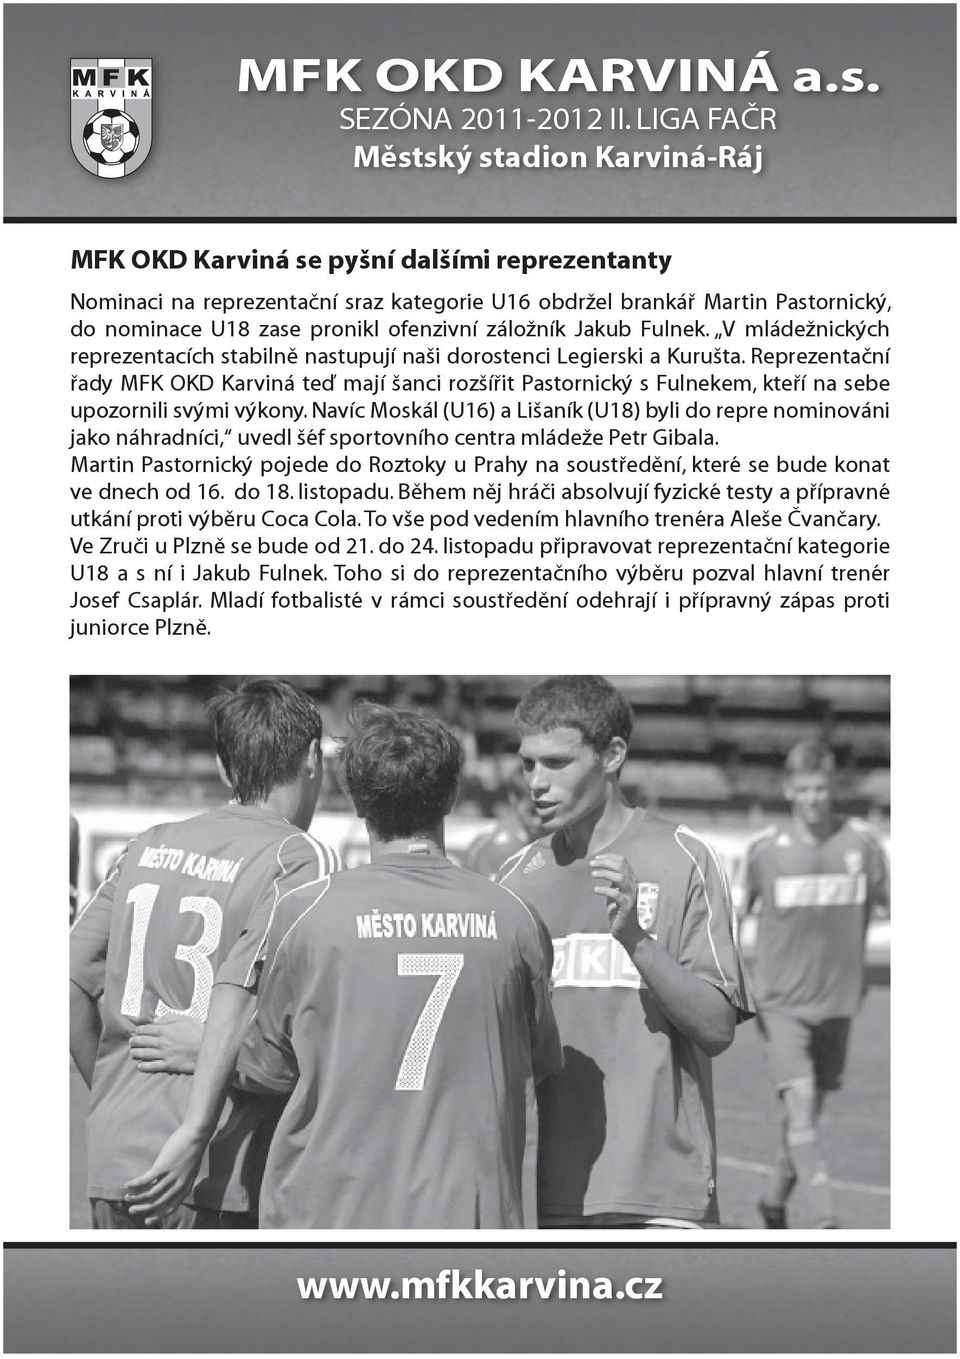 Reprezentační řady MFK OKD Karviná teď mají šanci rozšířit Pastornický s Fulnekem, kteří na sebe upozornili svými výkony.